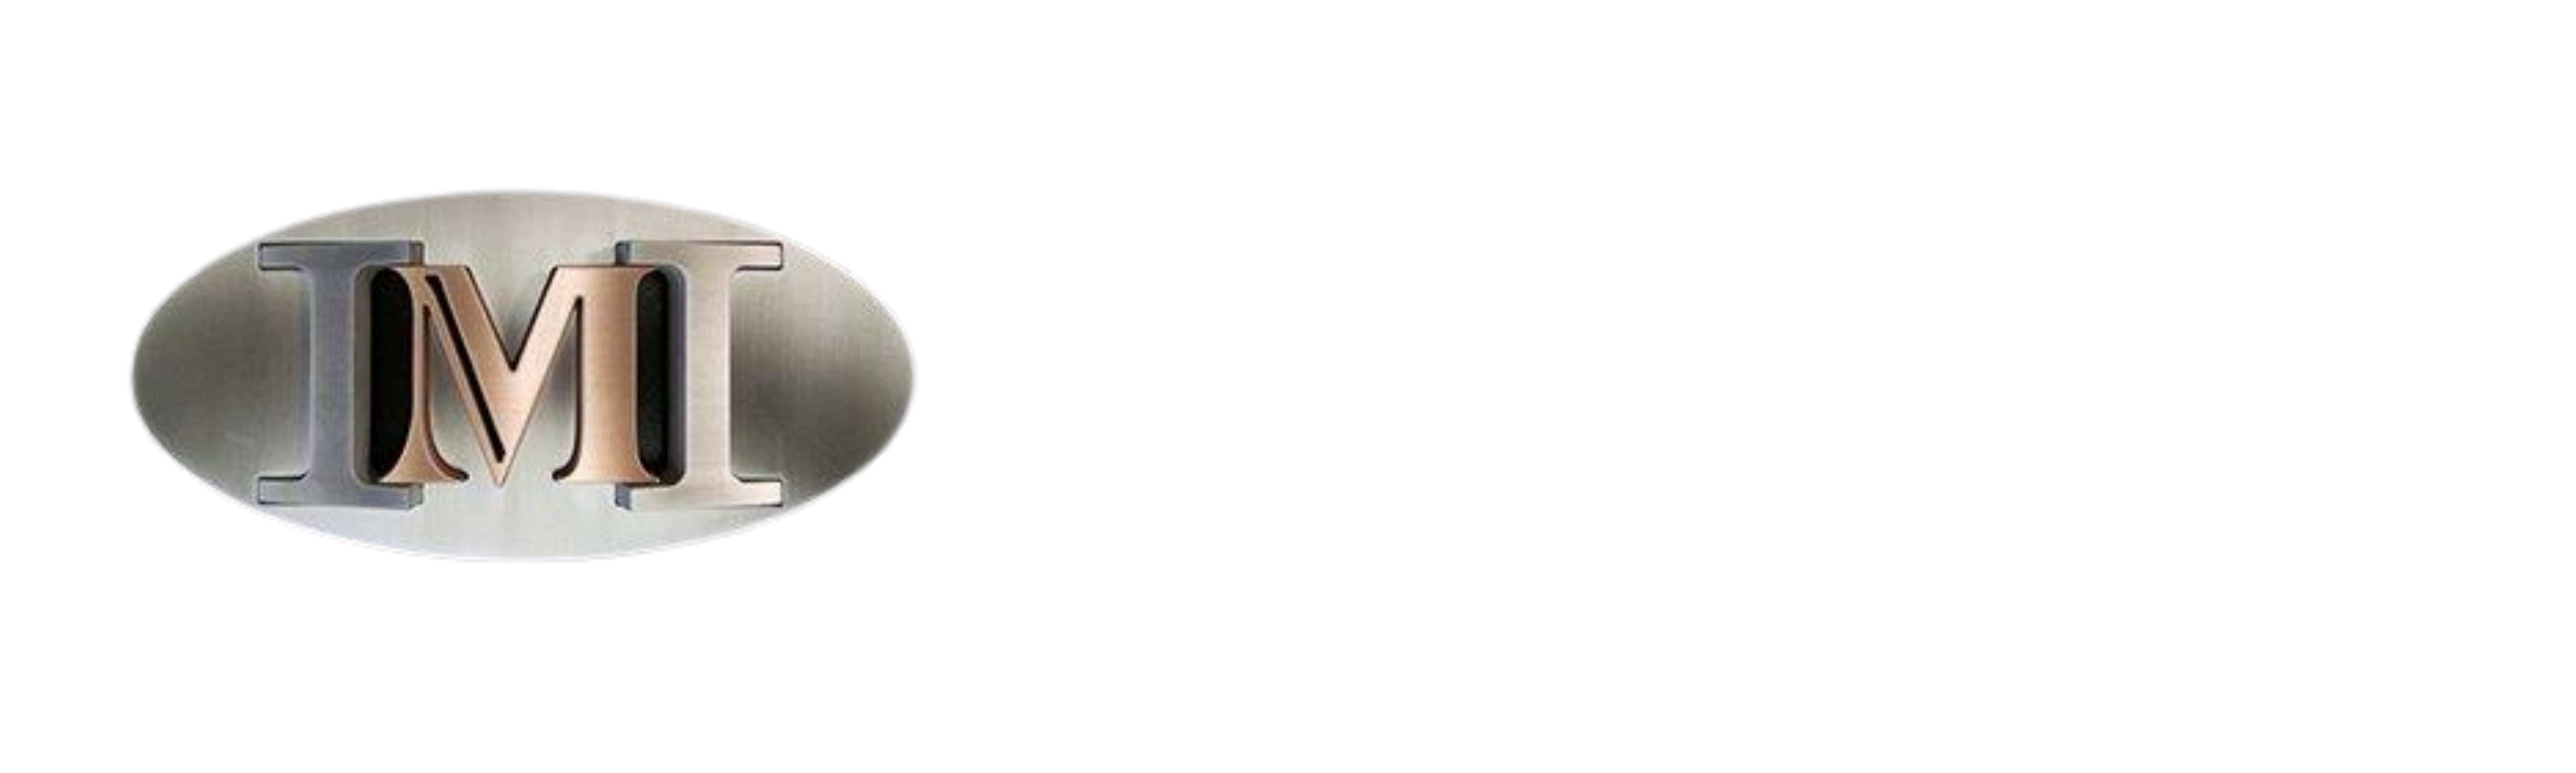 I M Industries Ltd   